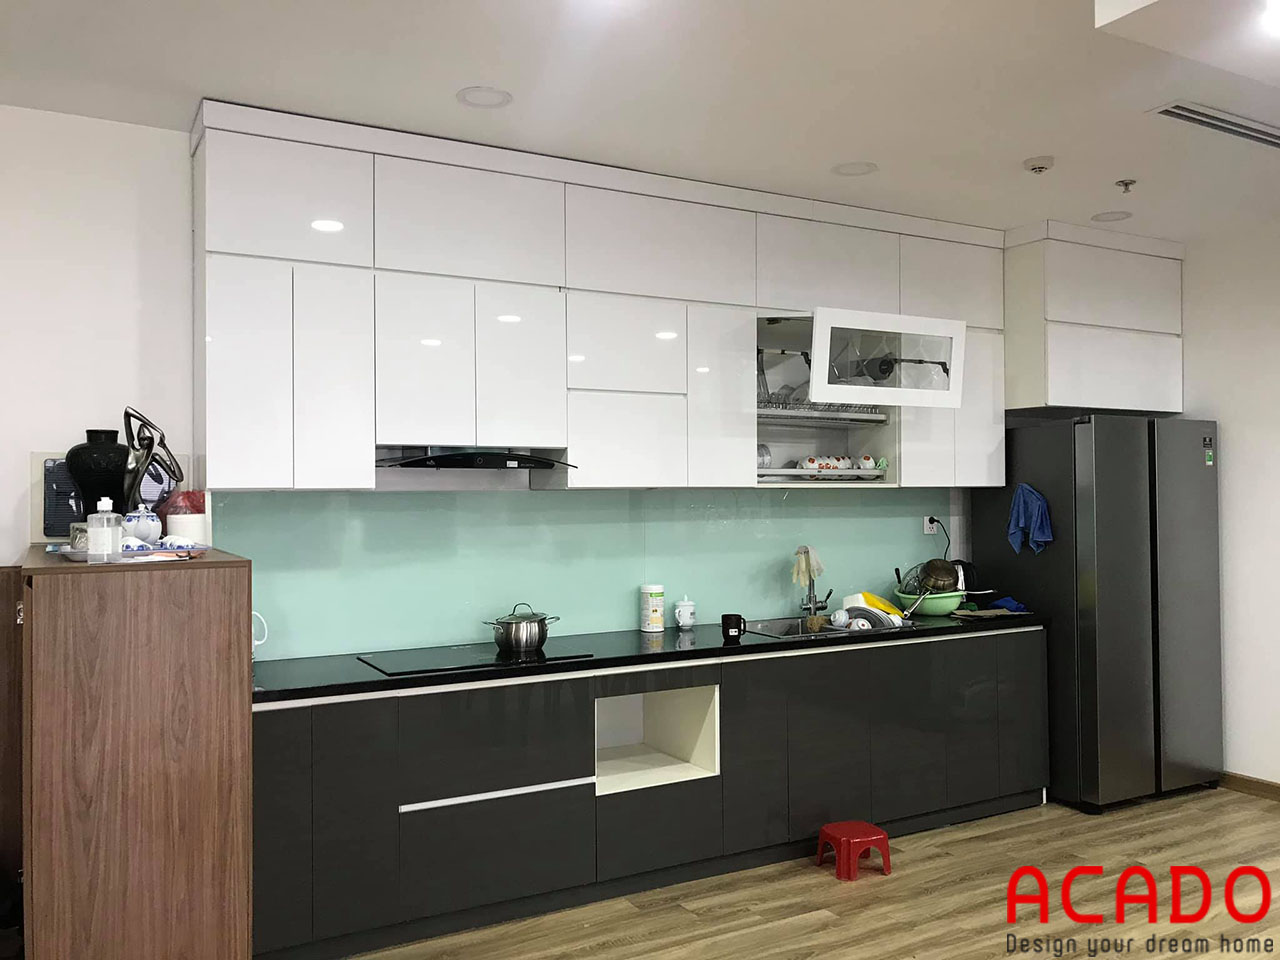 Tủ bếp thùng nhựa Picomat cánh Acrylic bóng gương kết hợp kính bếp màu trắng xanh tạo nên một căn bếp hoàn hảo